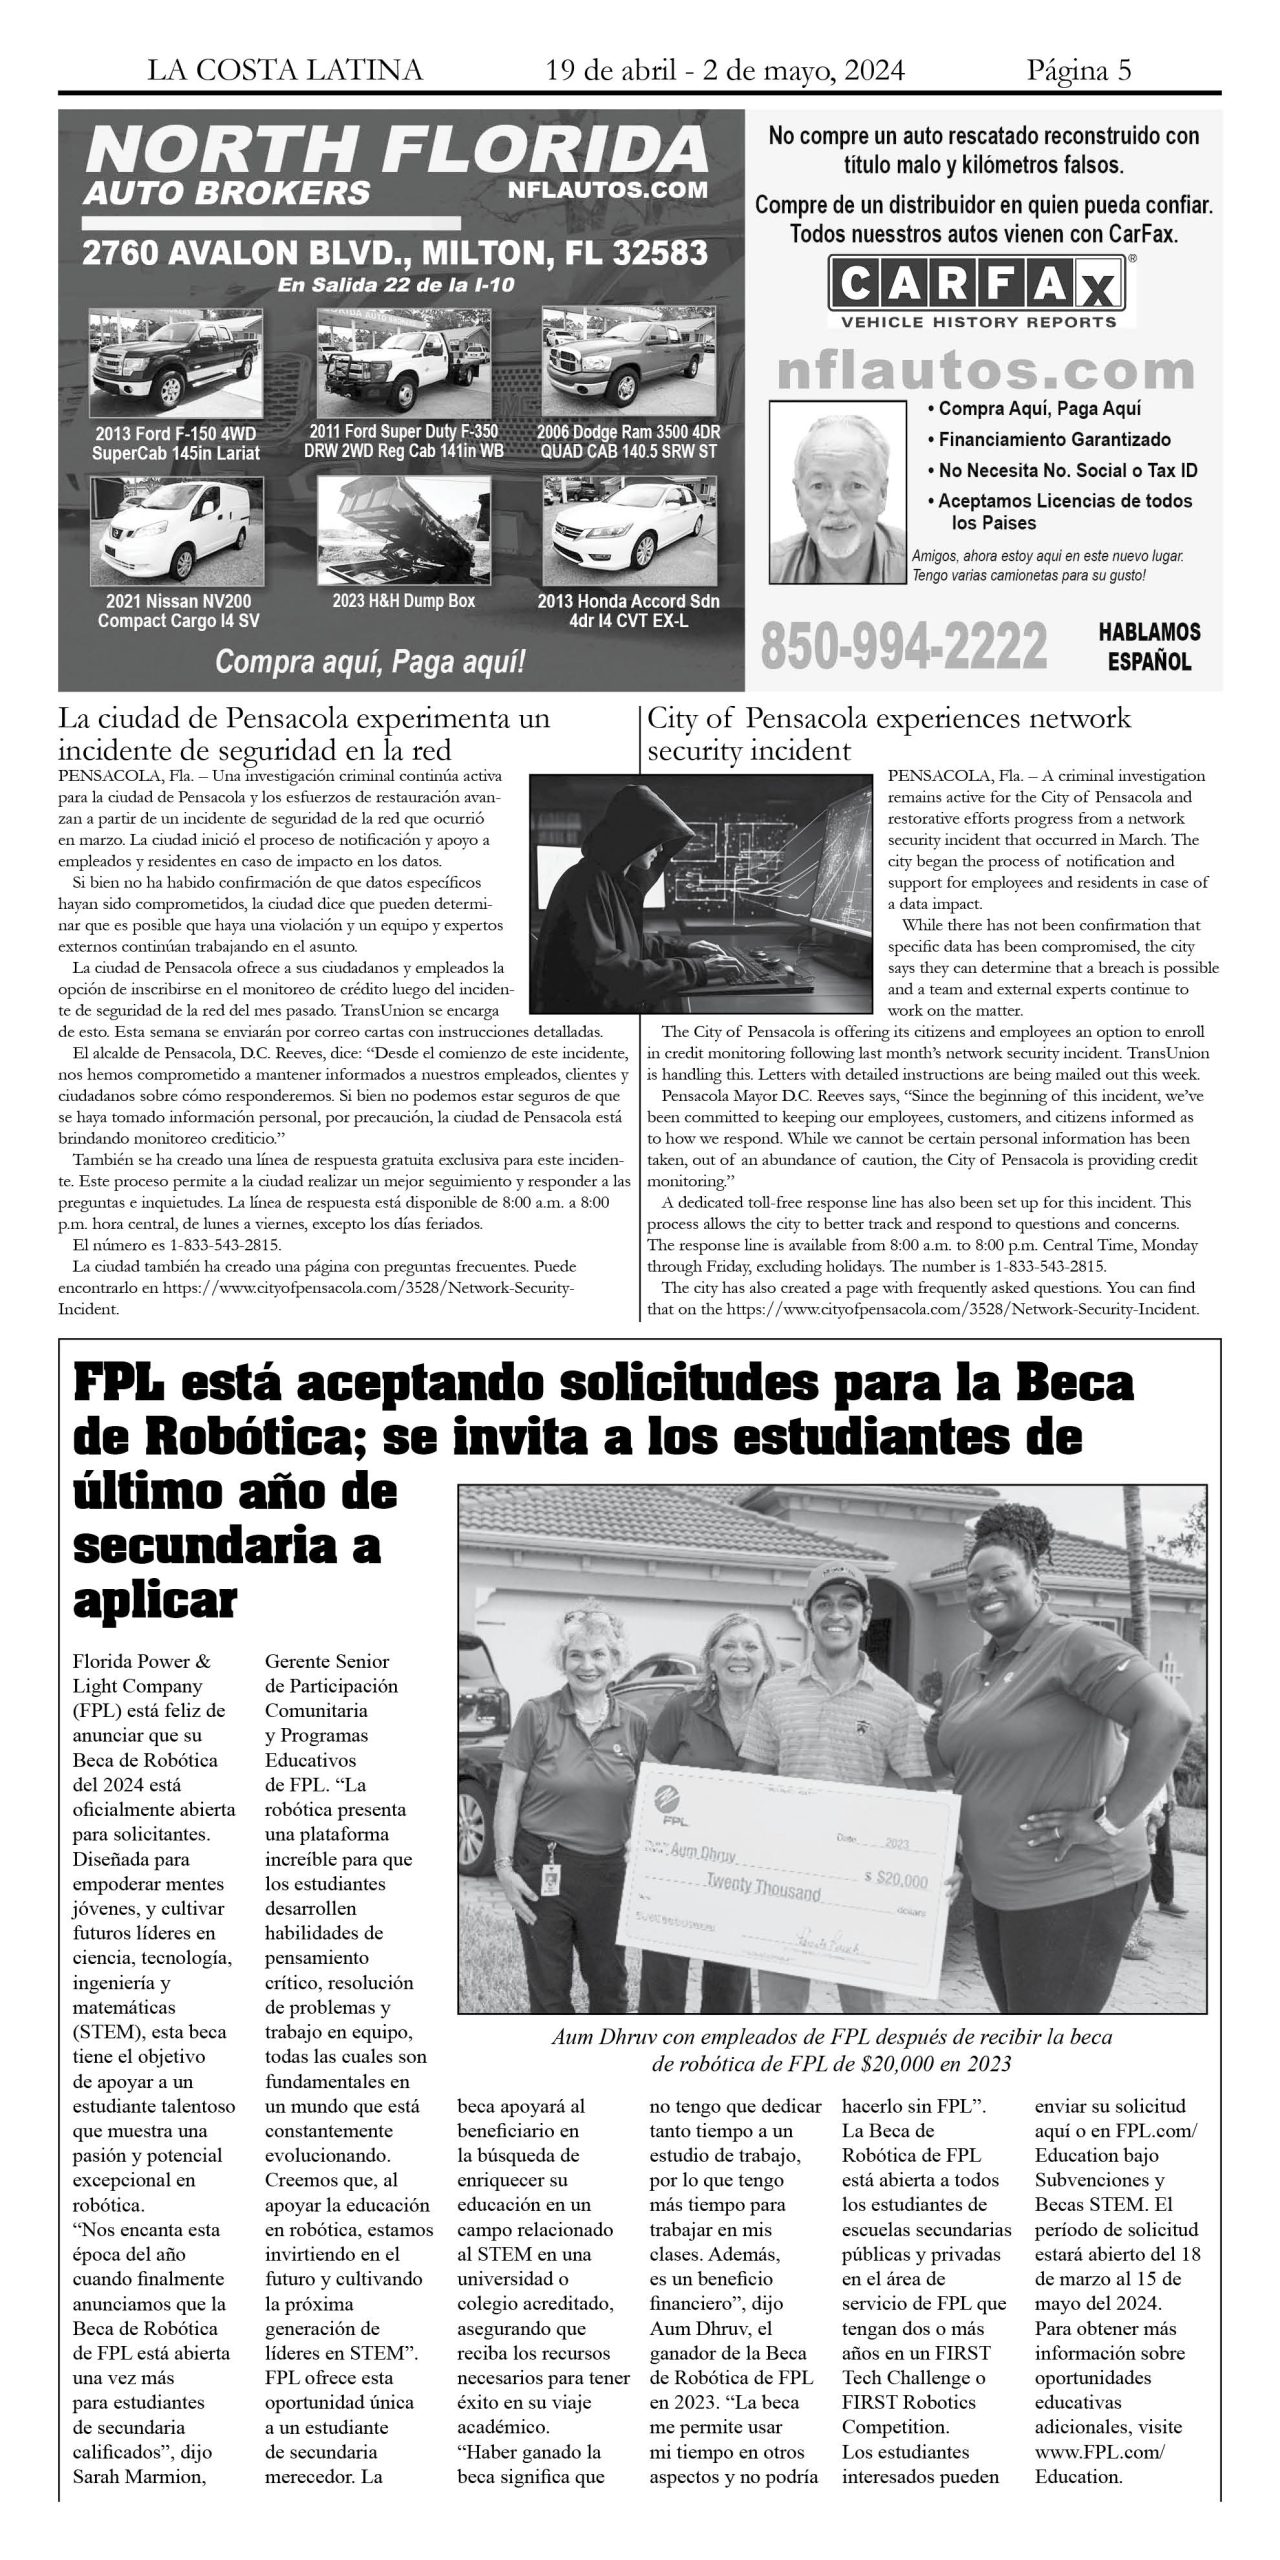 La Costa Latina April 19 - May 2, 2024 page 5